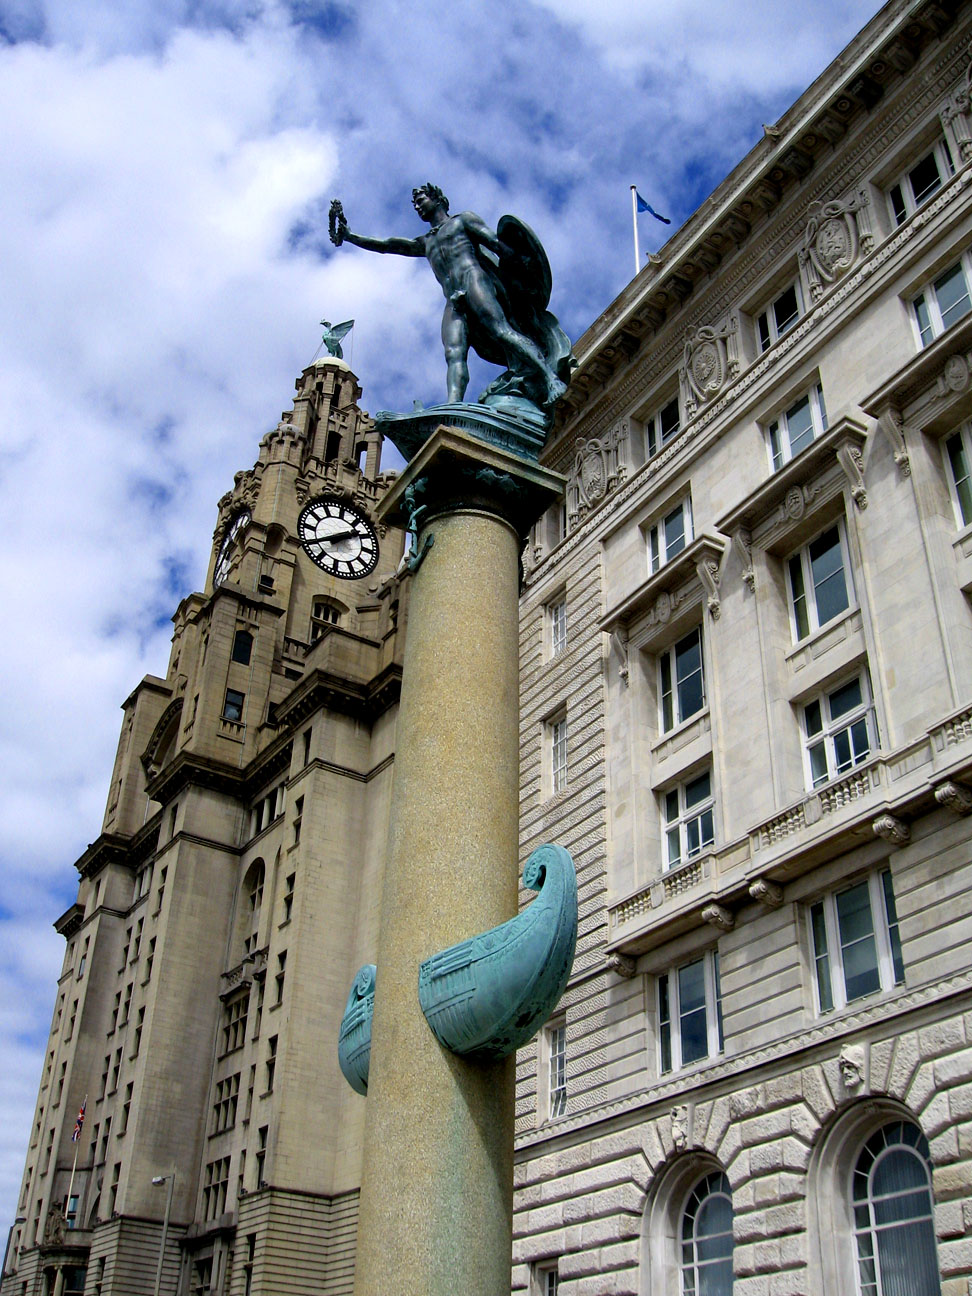 Royal Liver Building, Liverpool, UK